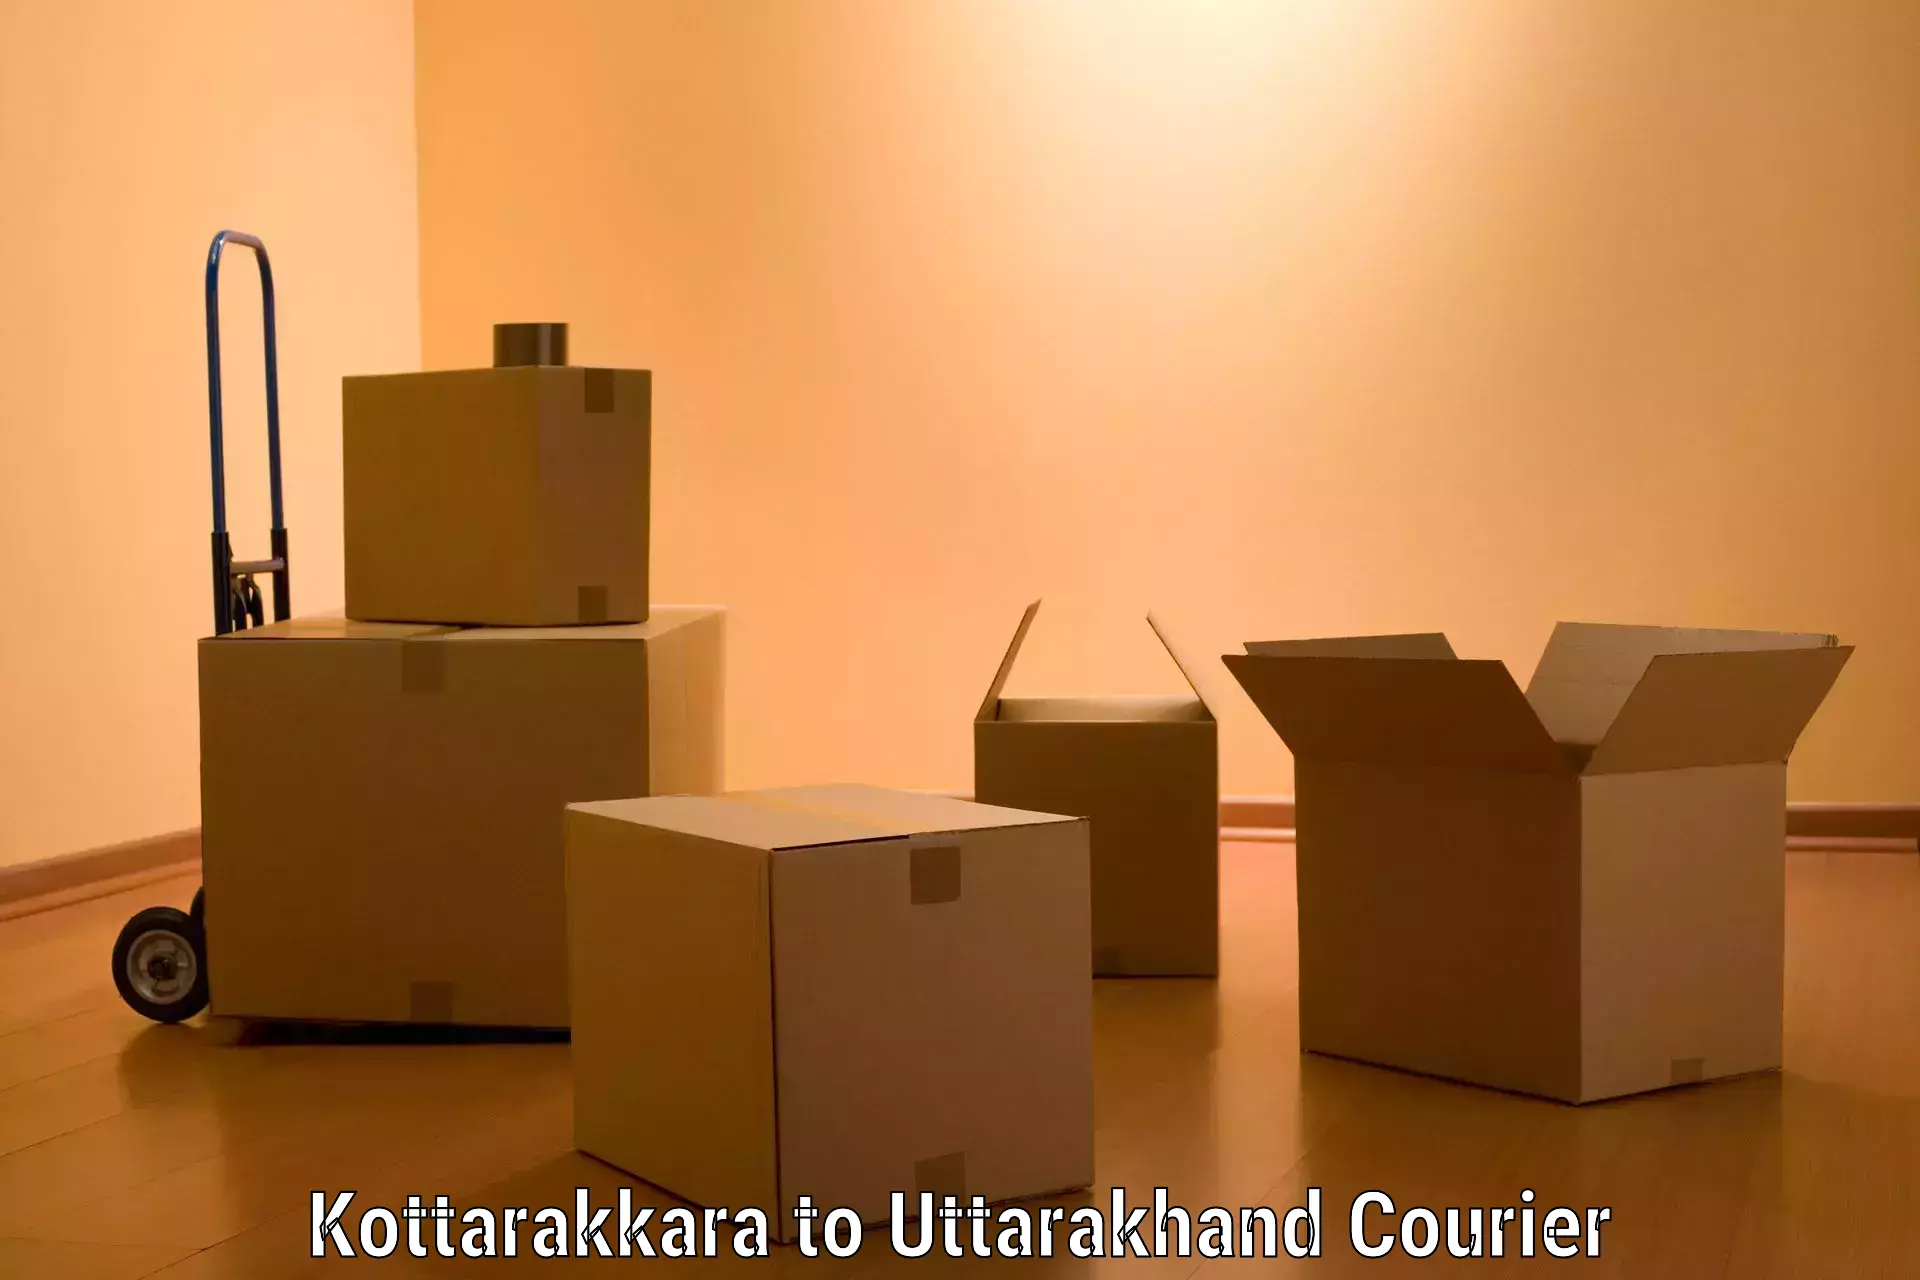 Moving and handling services in Kottarakkara to Uttarakhand